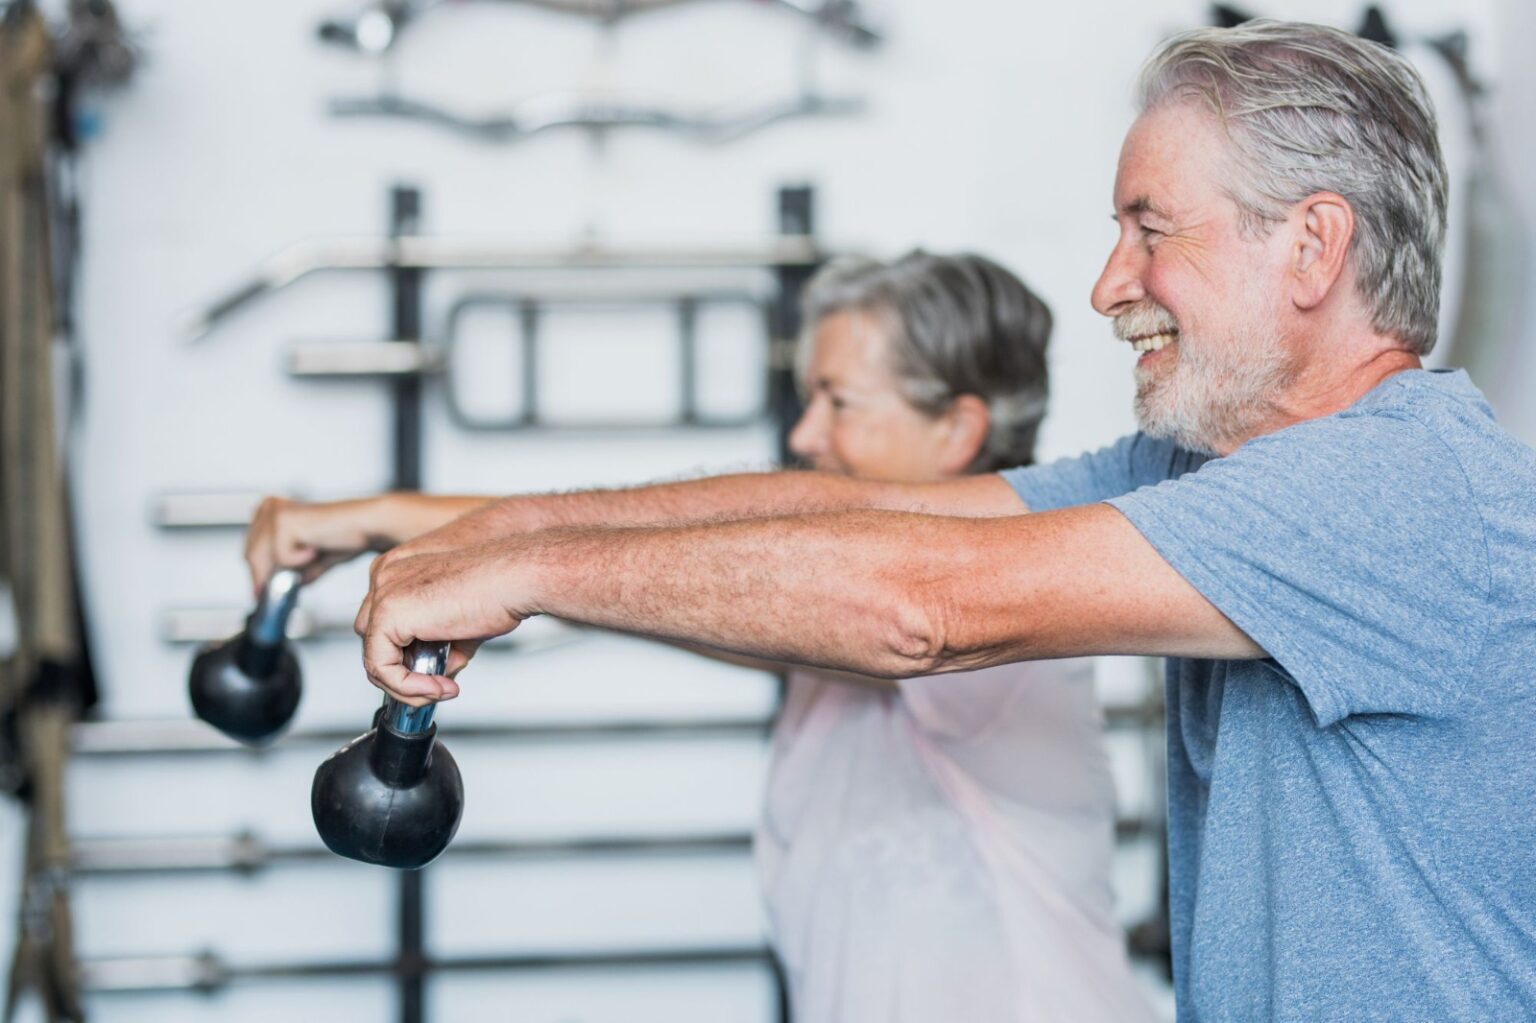 Musculação melhora sintomas de depressão e ansiedade em idosos, aponta estudo